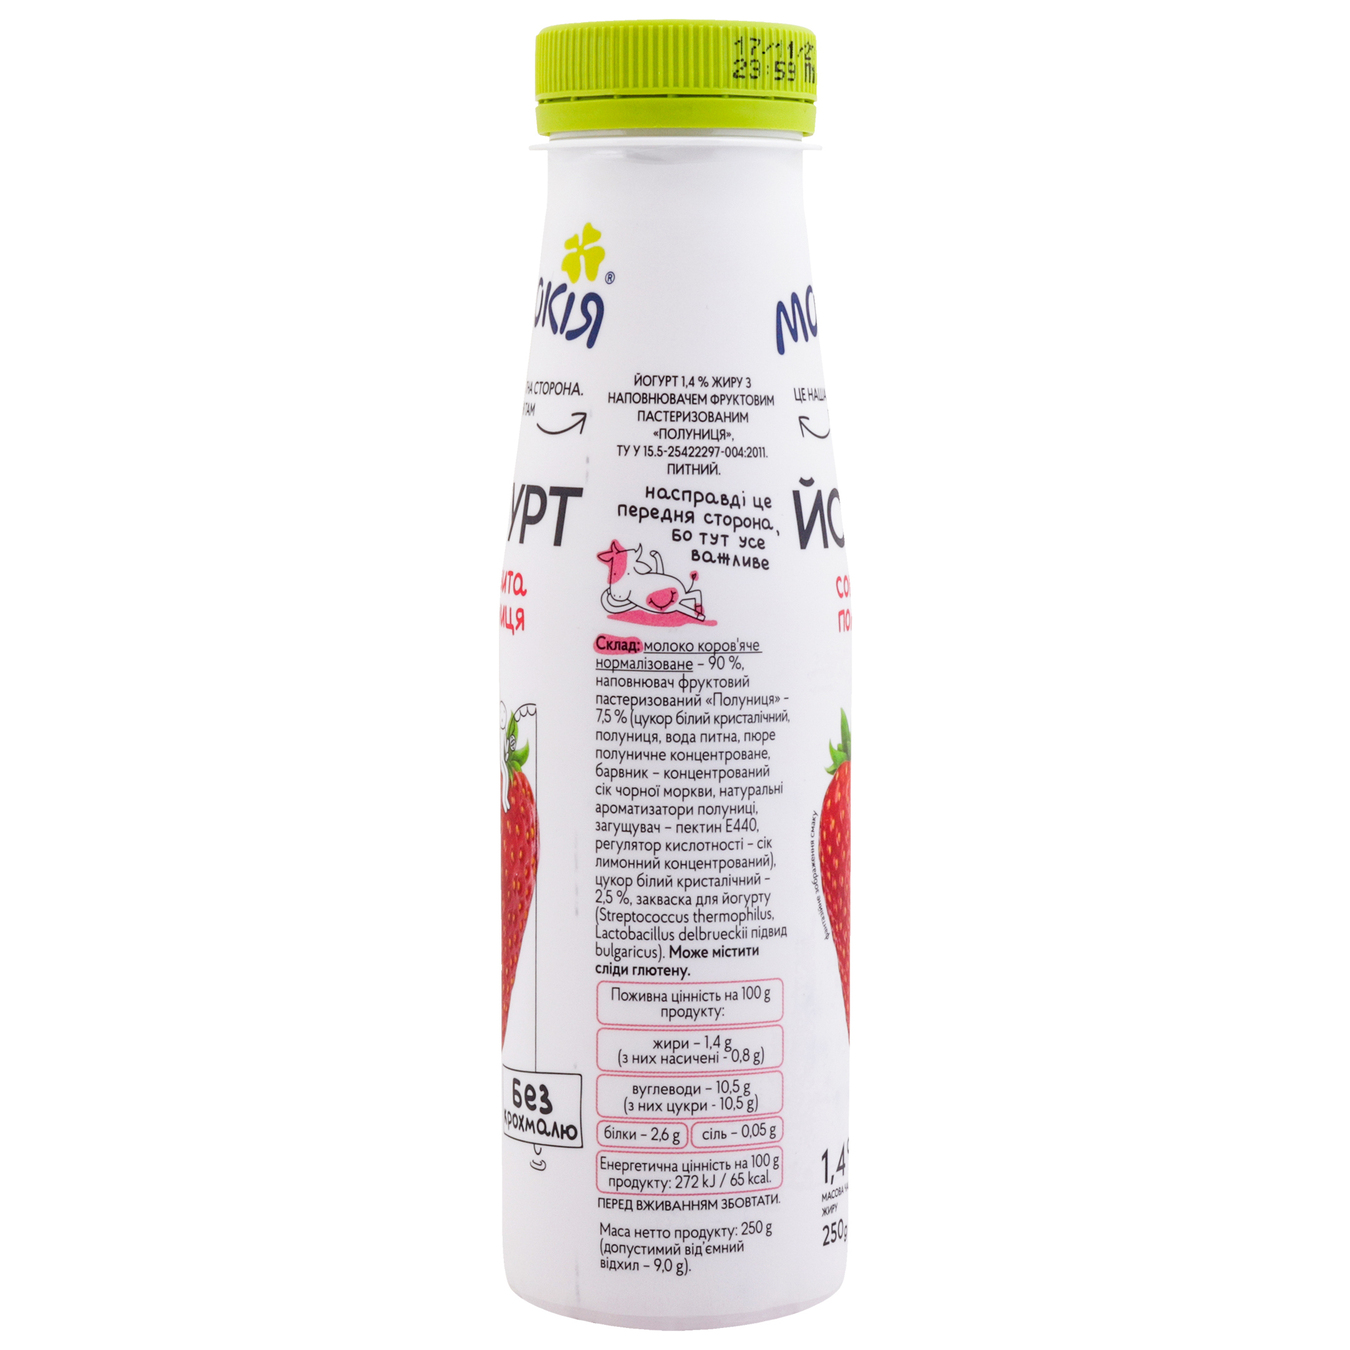 Йогурт Молокия Сочная клубника 1.4% 250г 4